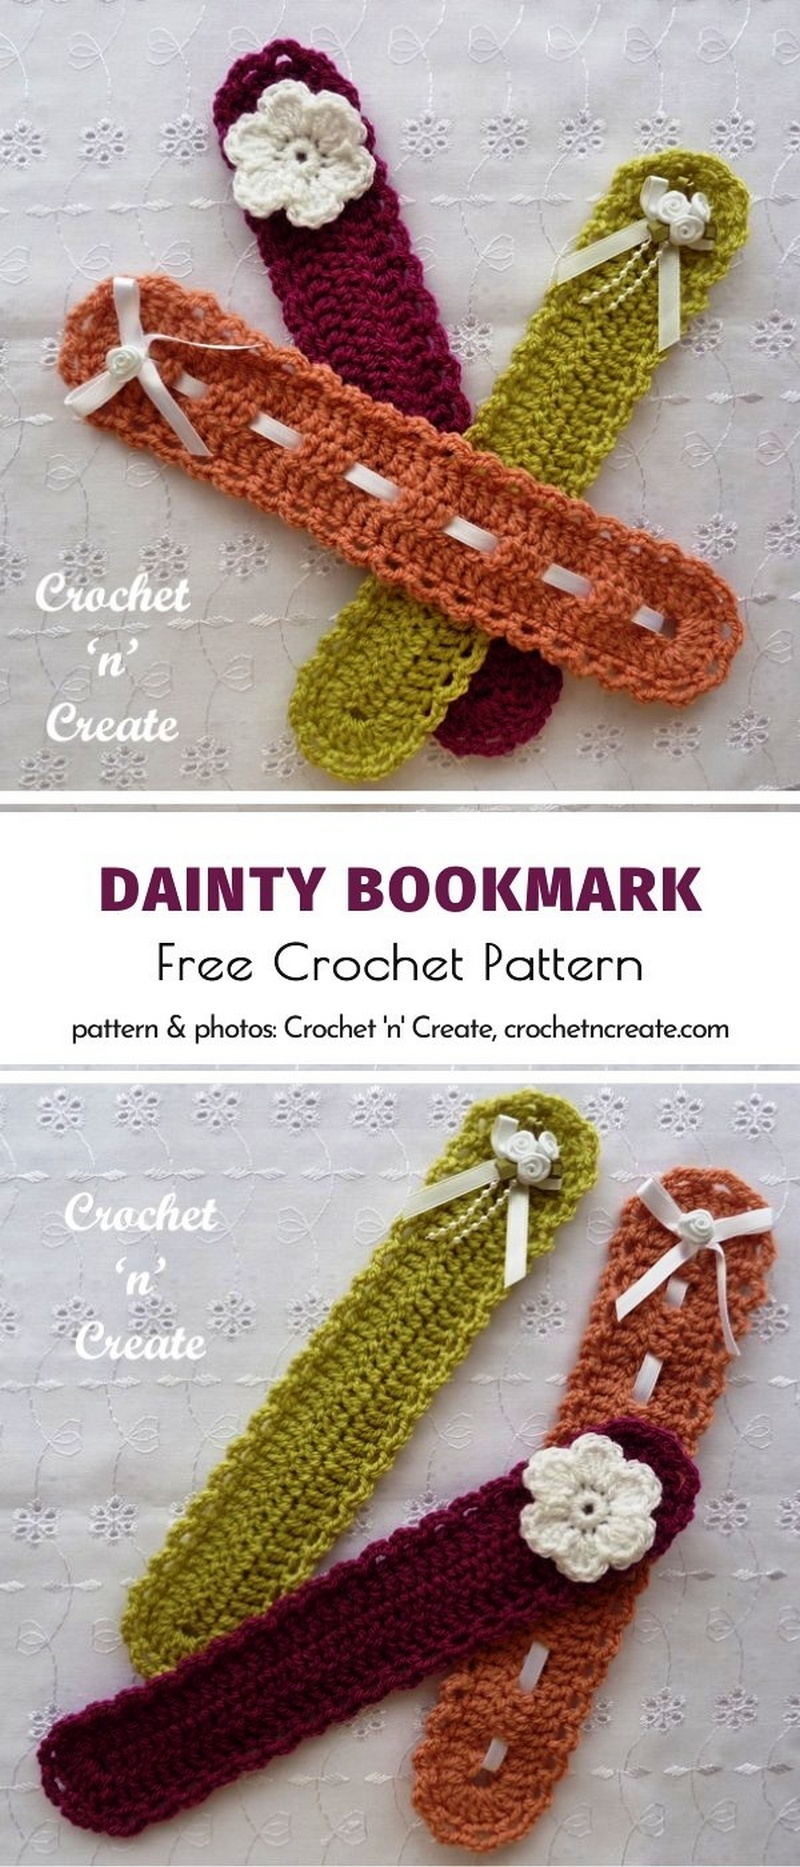 Dainty Crochet Bookmark Pattern